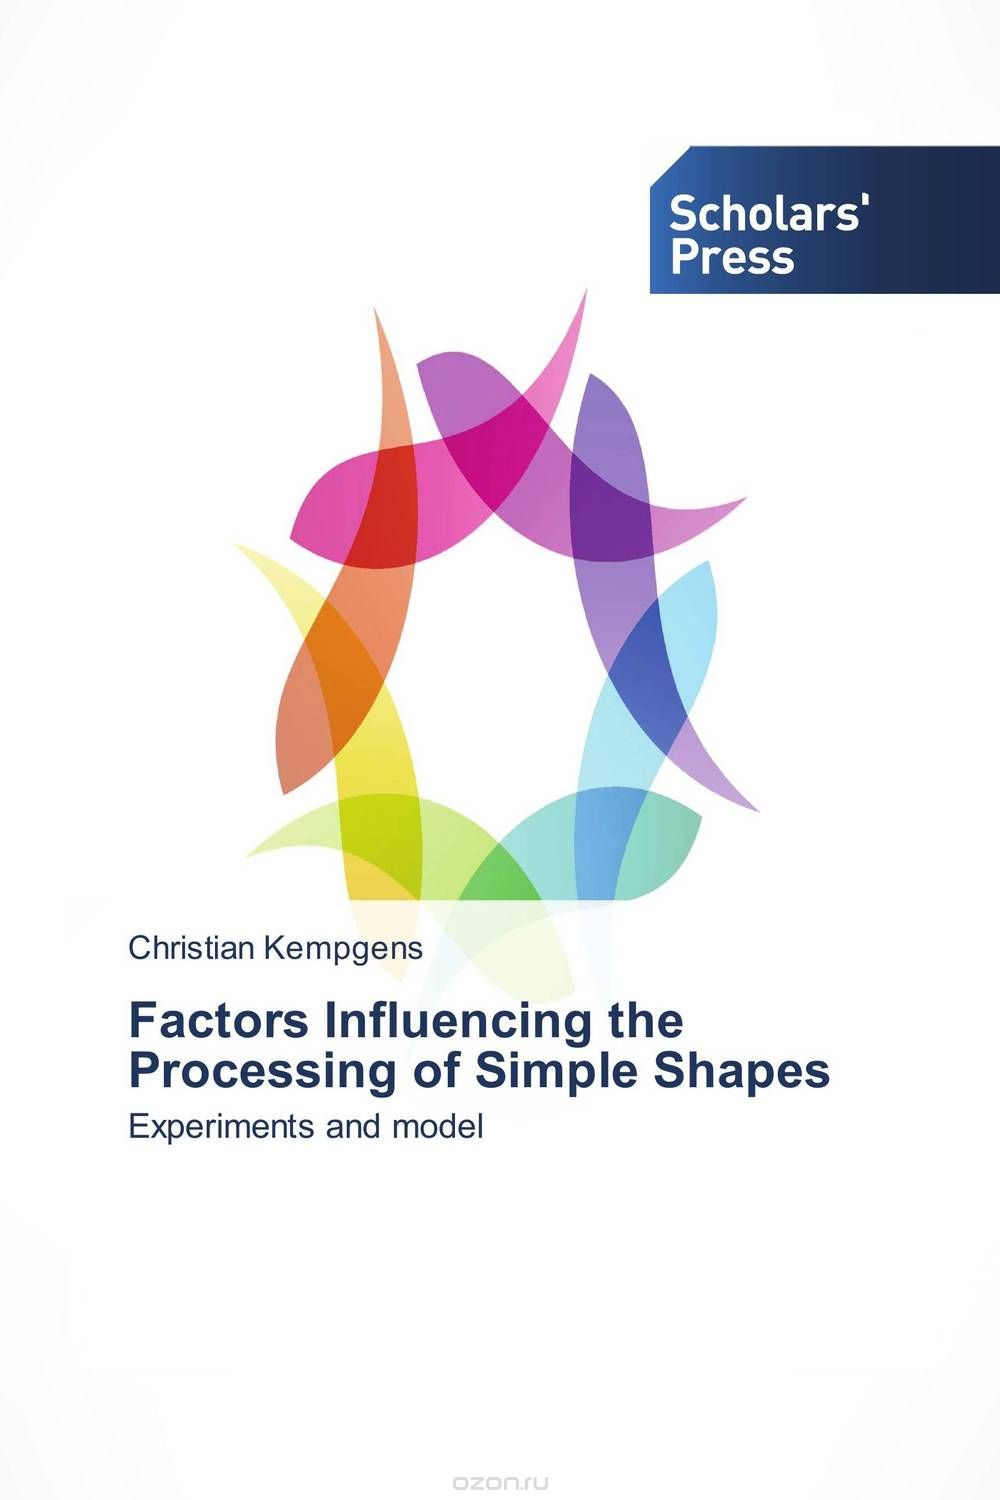 Скачать книгу "Factors Influencing the Processing of Simple Shapes"